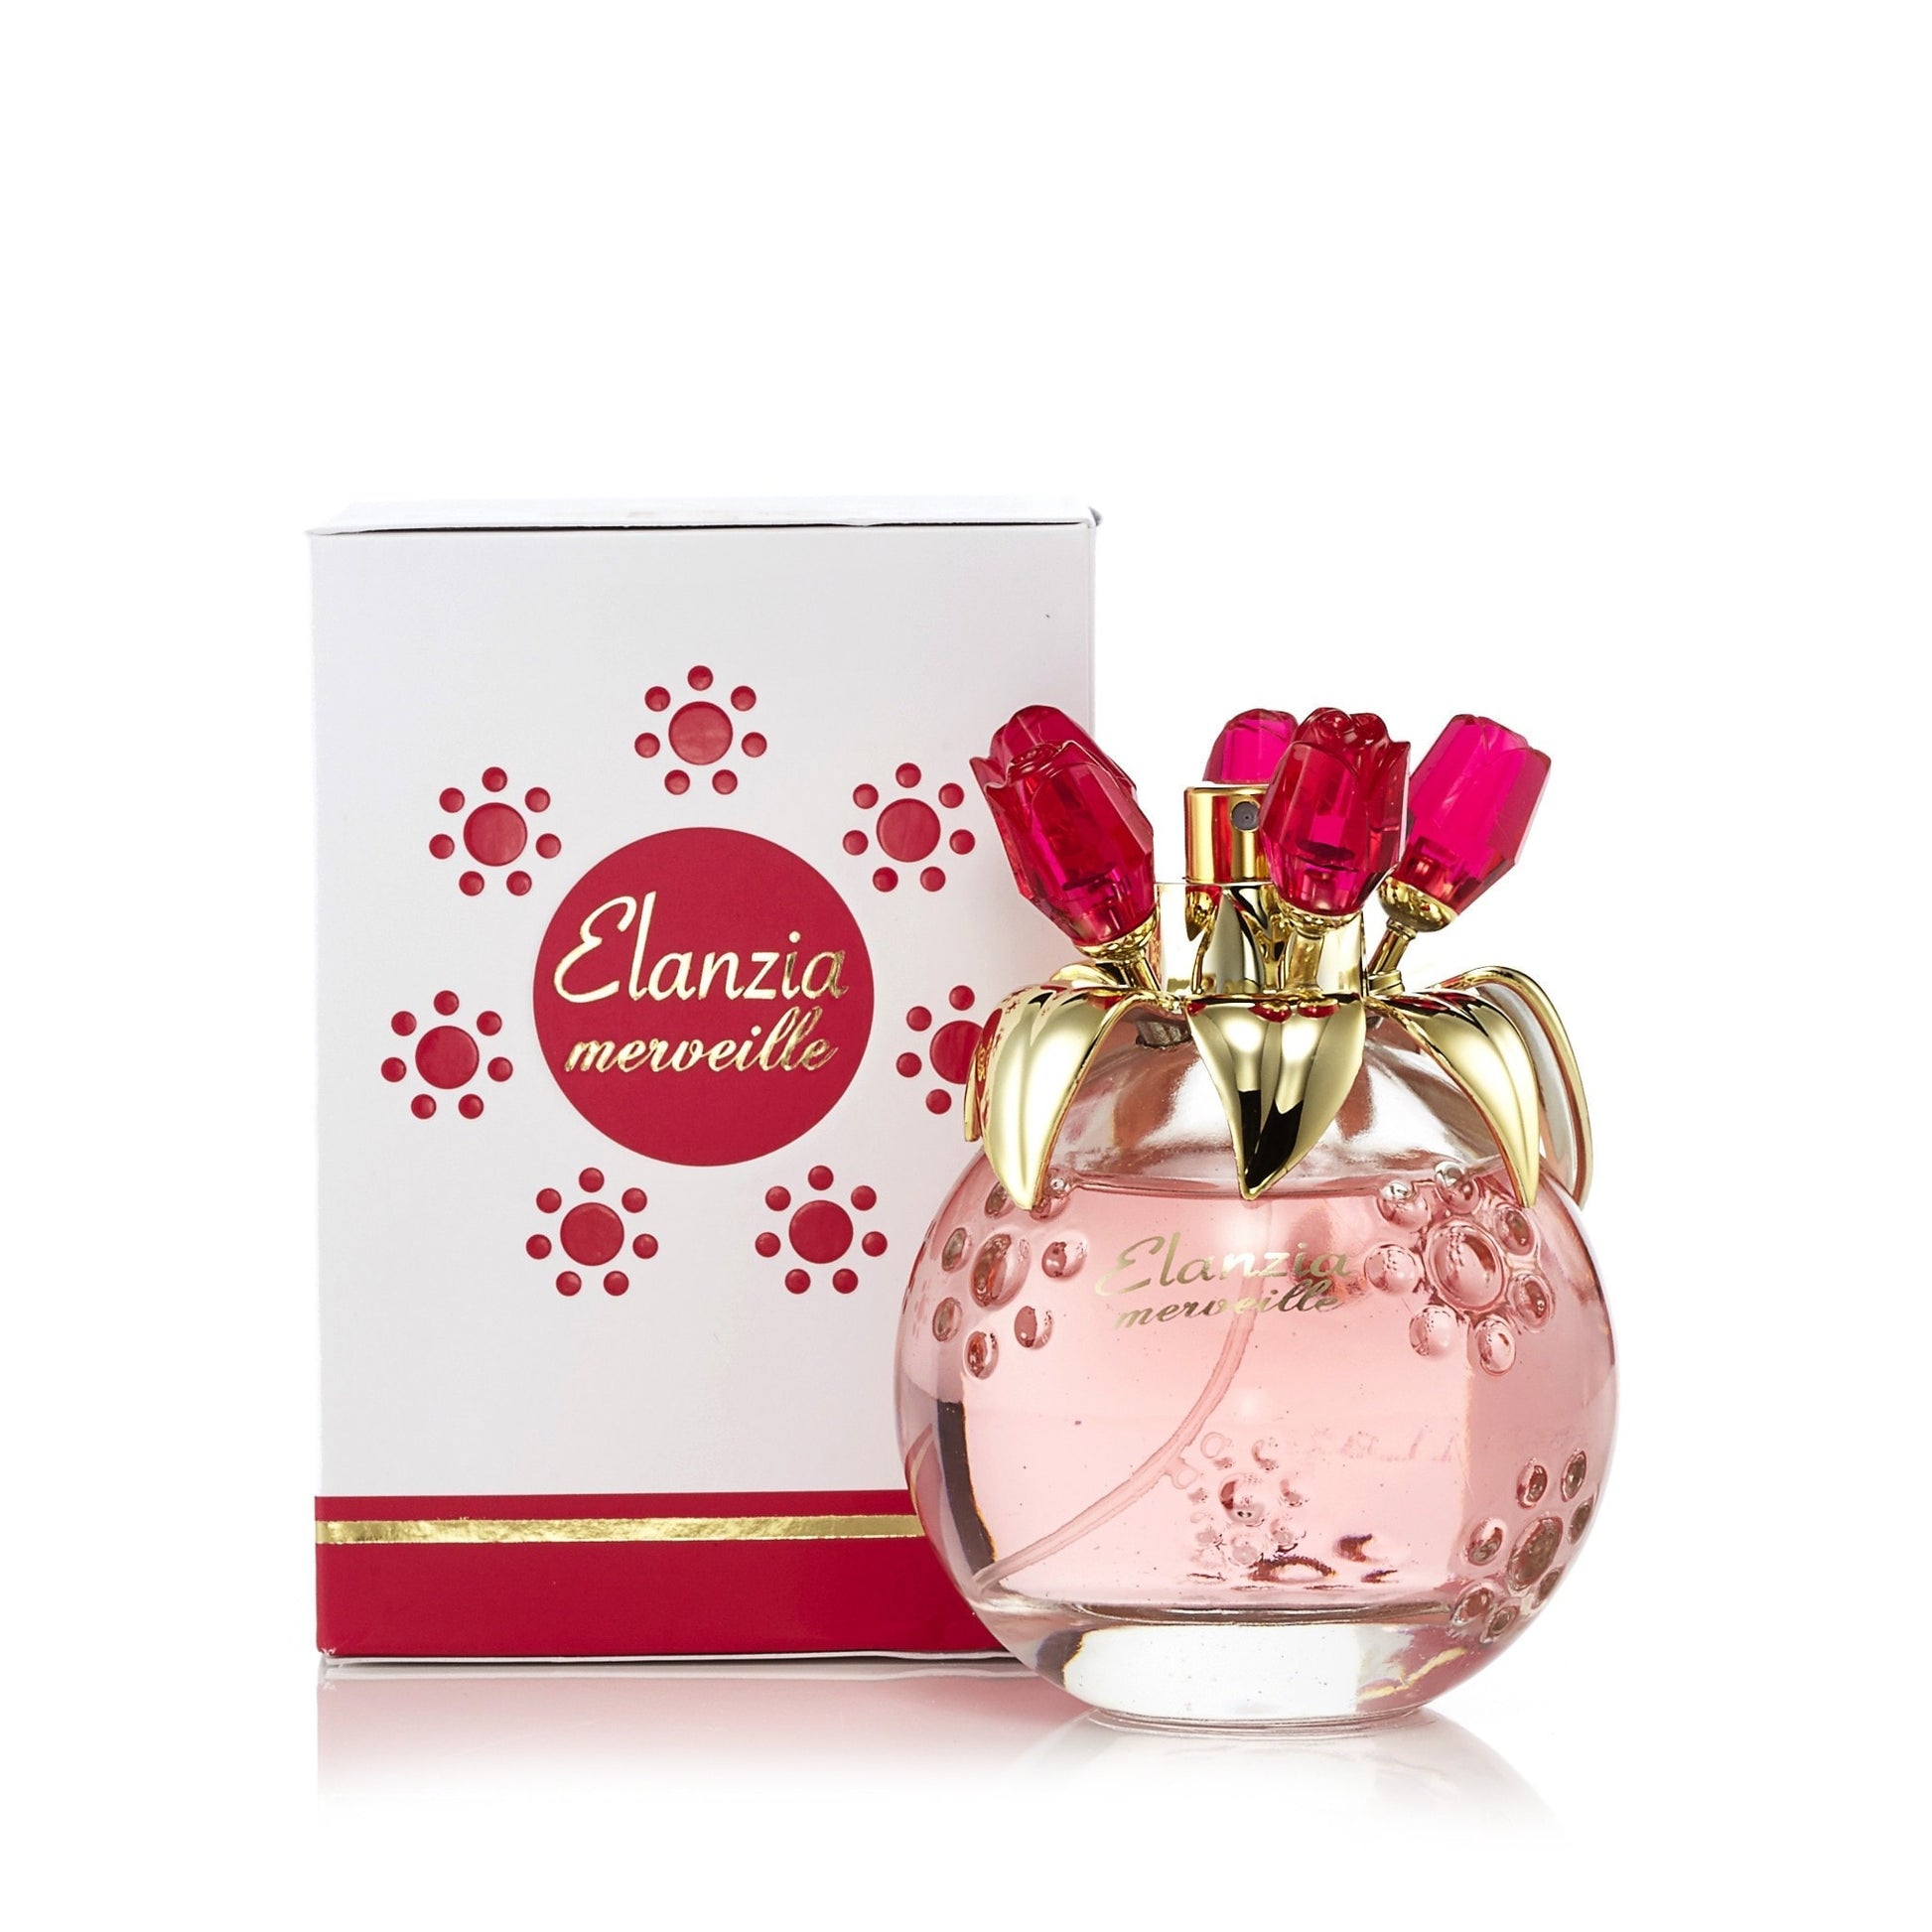 Elanzia Mervielle Pink Eau de Parfum Spray for Women 3.3 oz. Click to open in modal